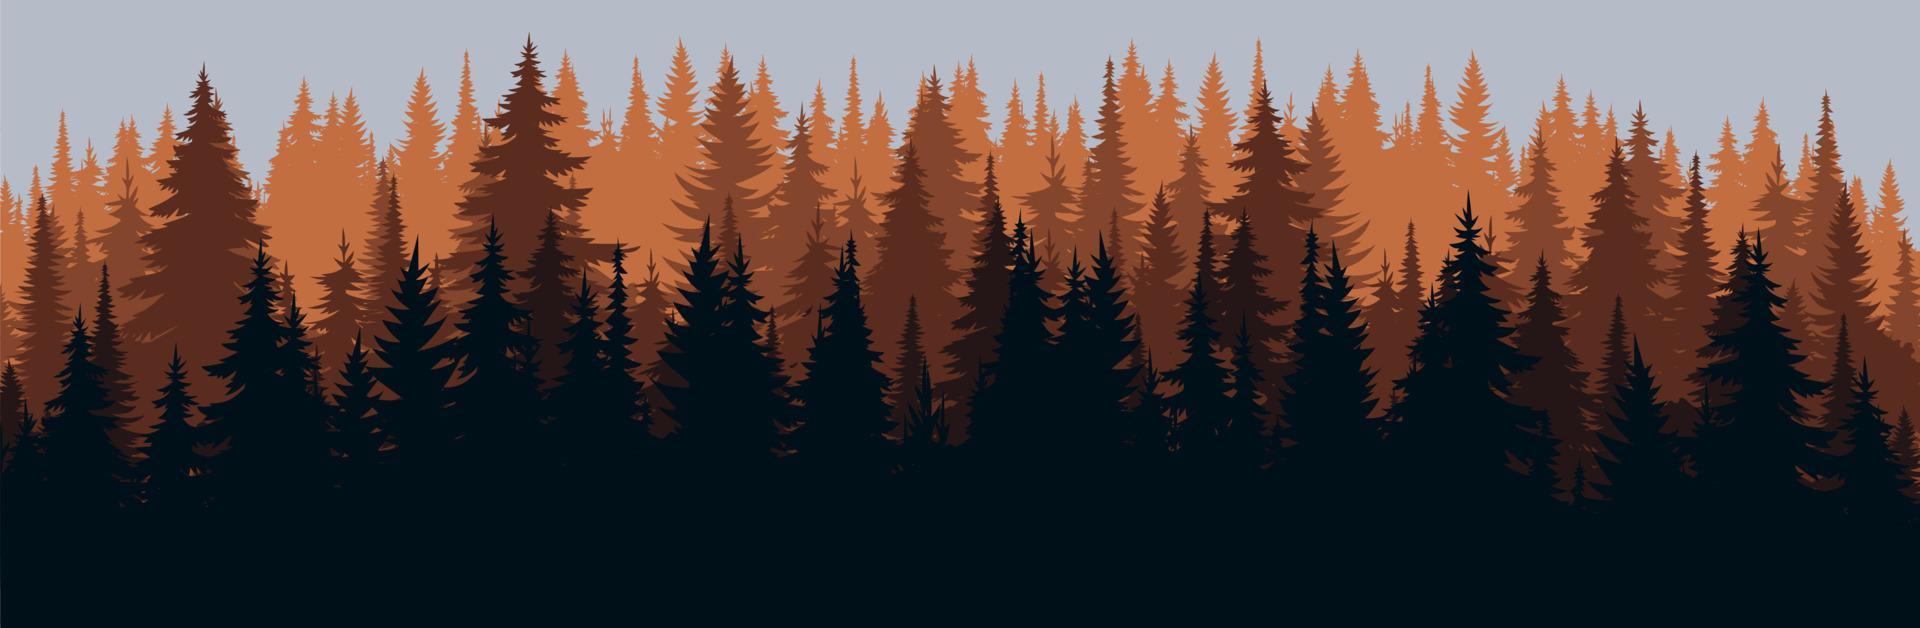 vektor berg skog bakgrundsstruktur, siluett av barrskog, vektor. höstsäsongen apelsin, gula träd, gran, gran. horisontellt landskap.